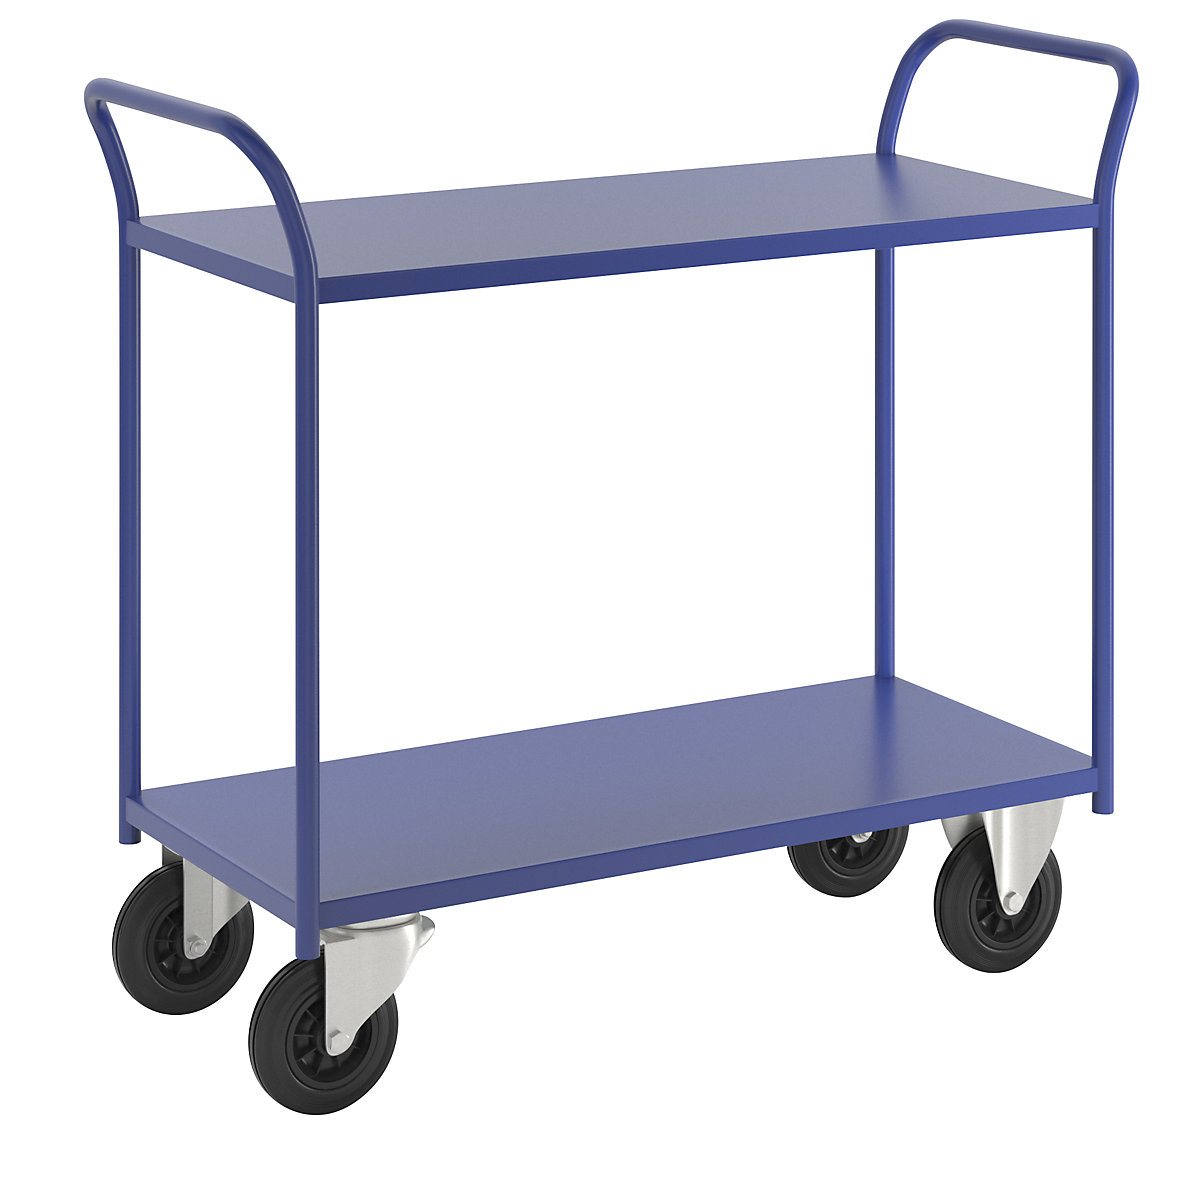 Stolový vozík KM41 – Kongamek, 2 poschodia, d x š x v 1080 x 450 x 975 mm, modrá, 2 otočné a 2 pevné kolieska-8